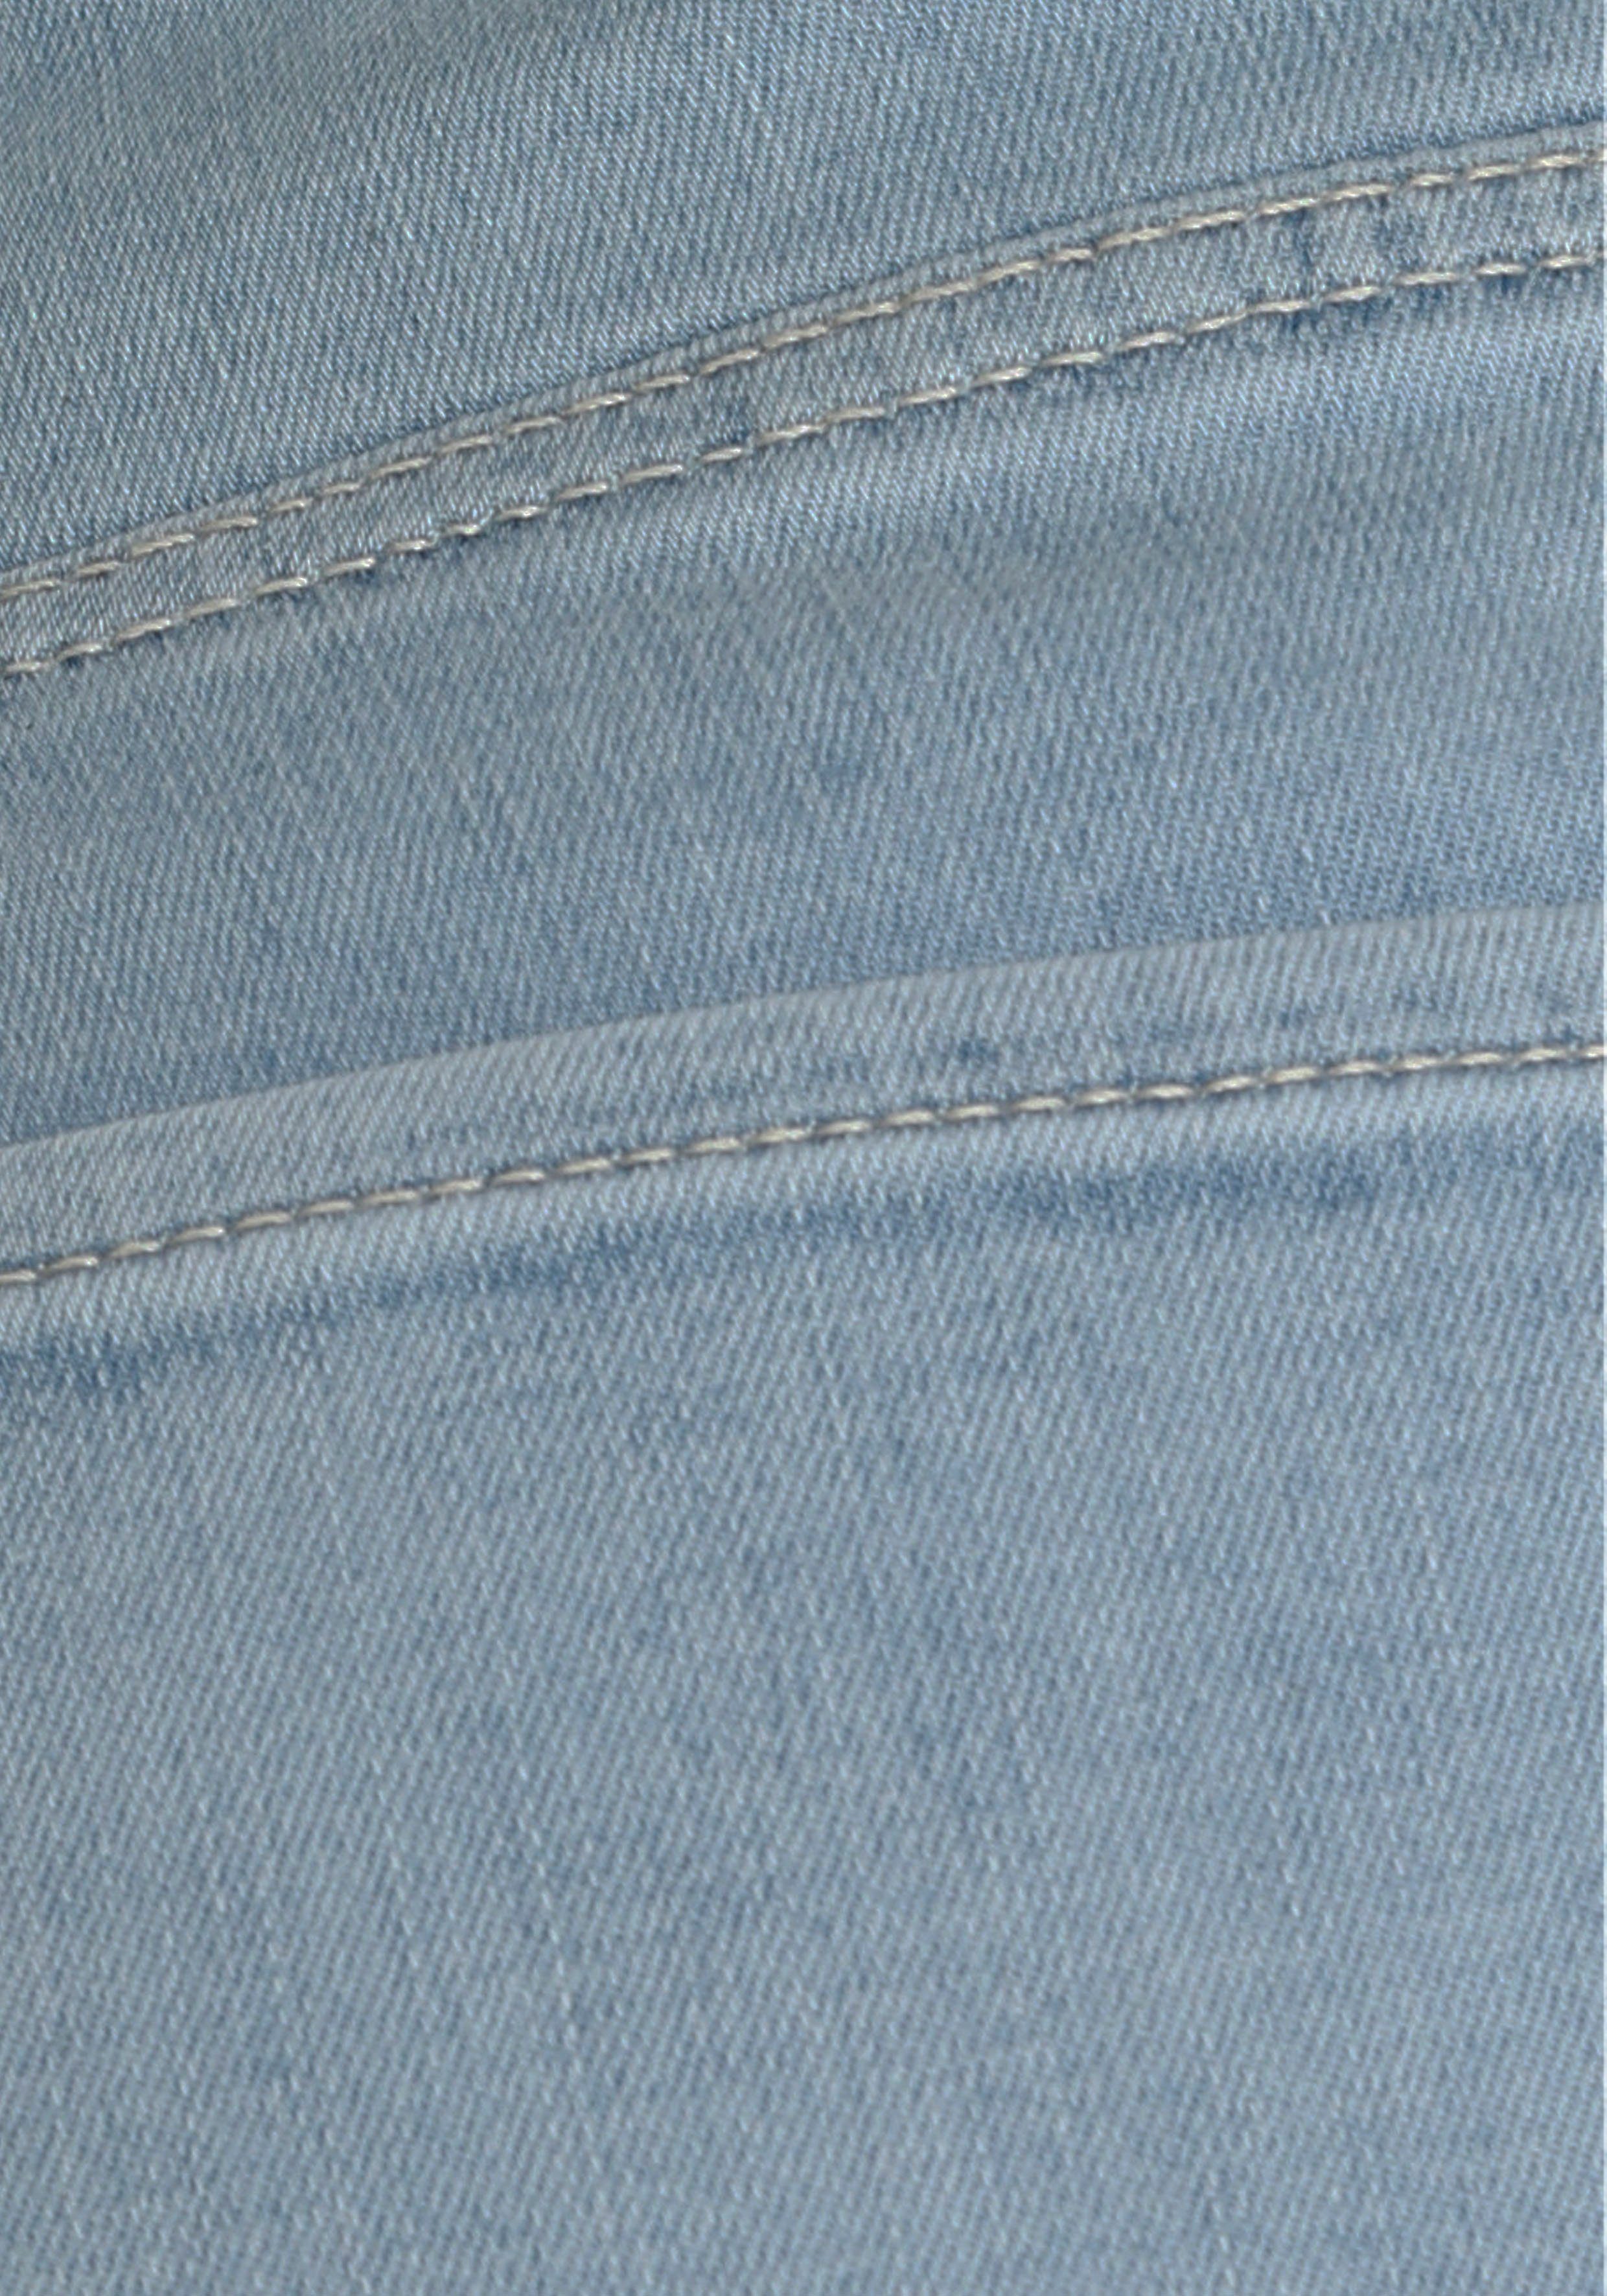 Saum blue modisch MAC und 3/4-Jeans verkürzt ausgestellt bleached Kick light leicht Dream